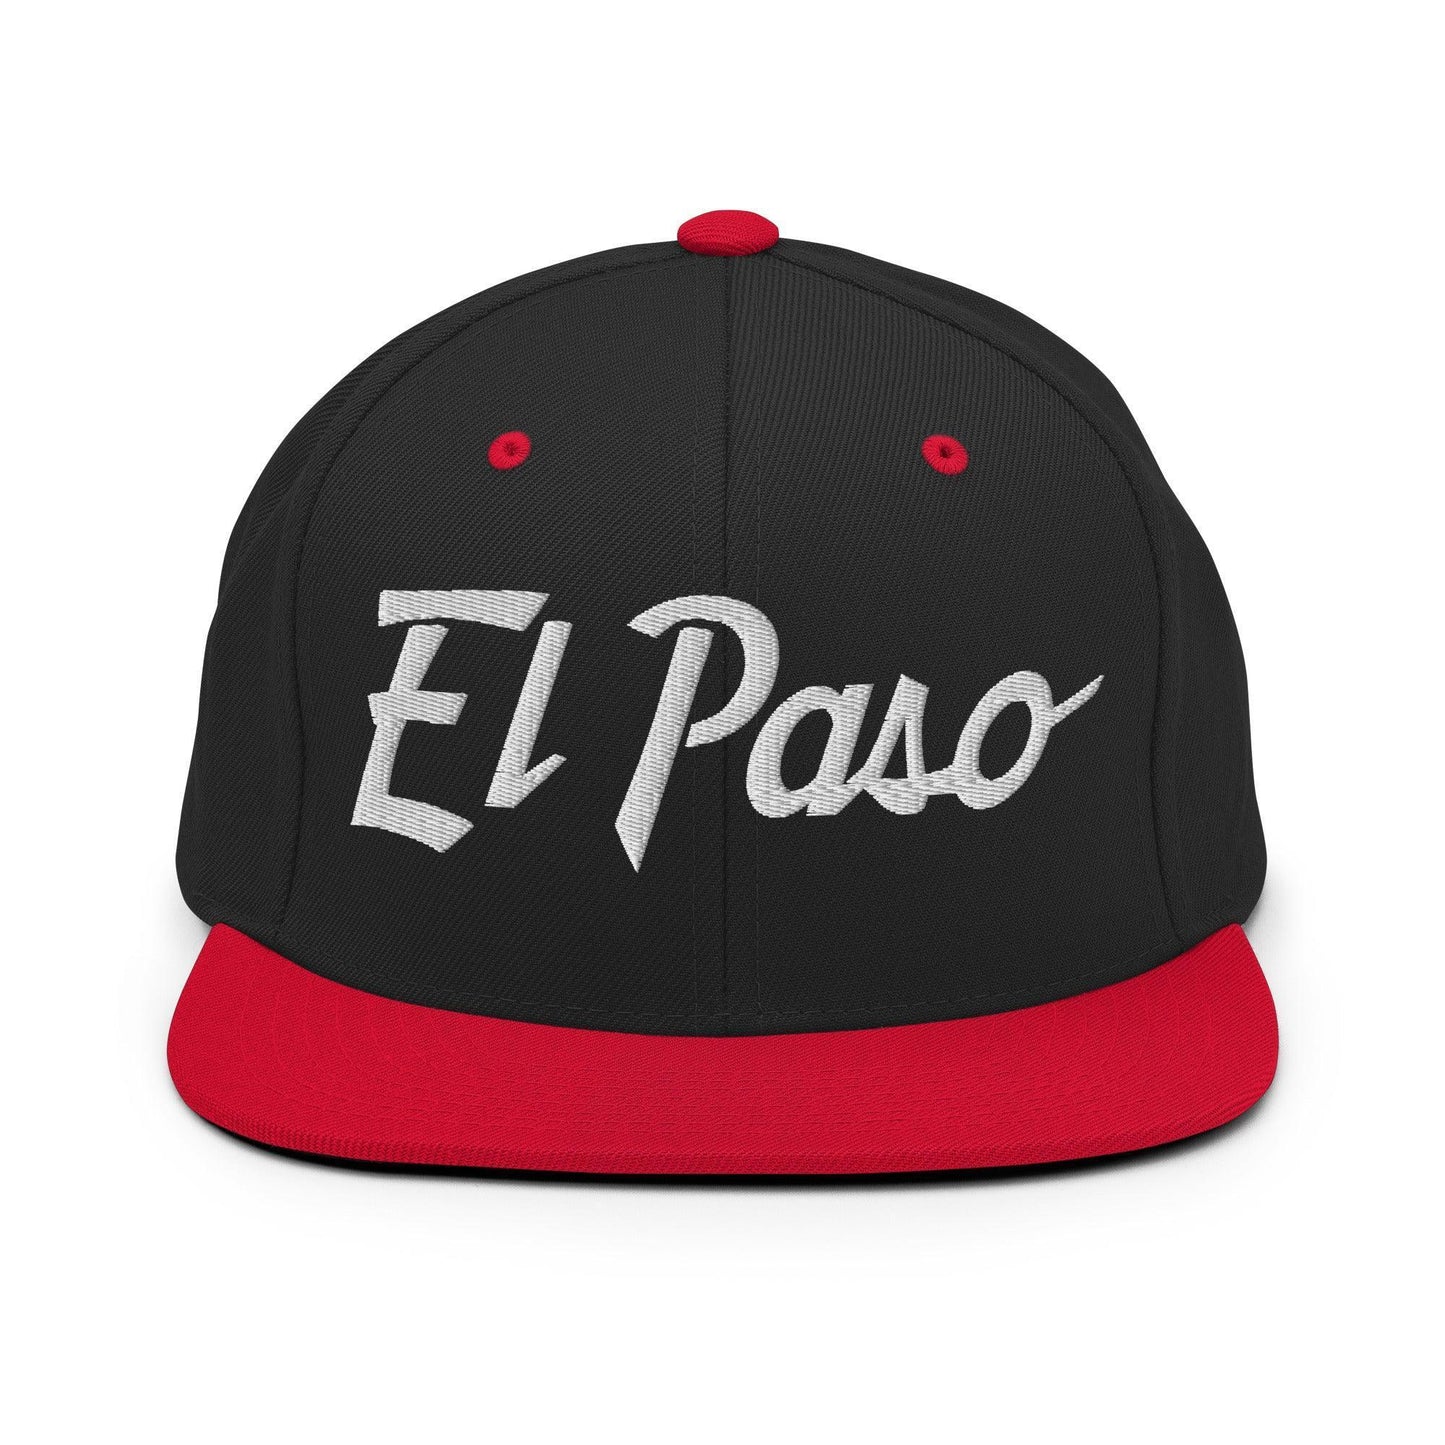 El Paso Script Snapback Hat Black Red